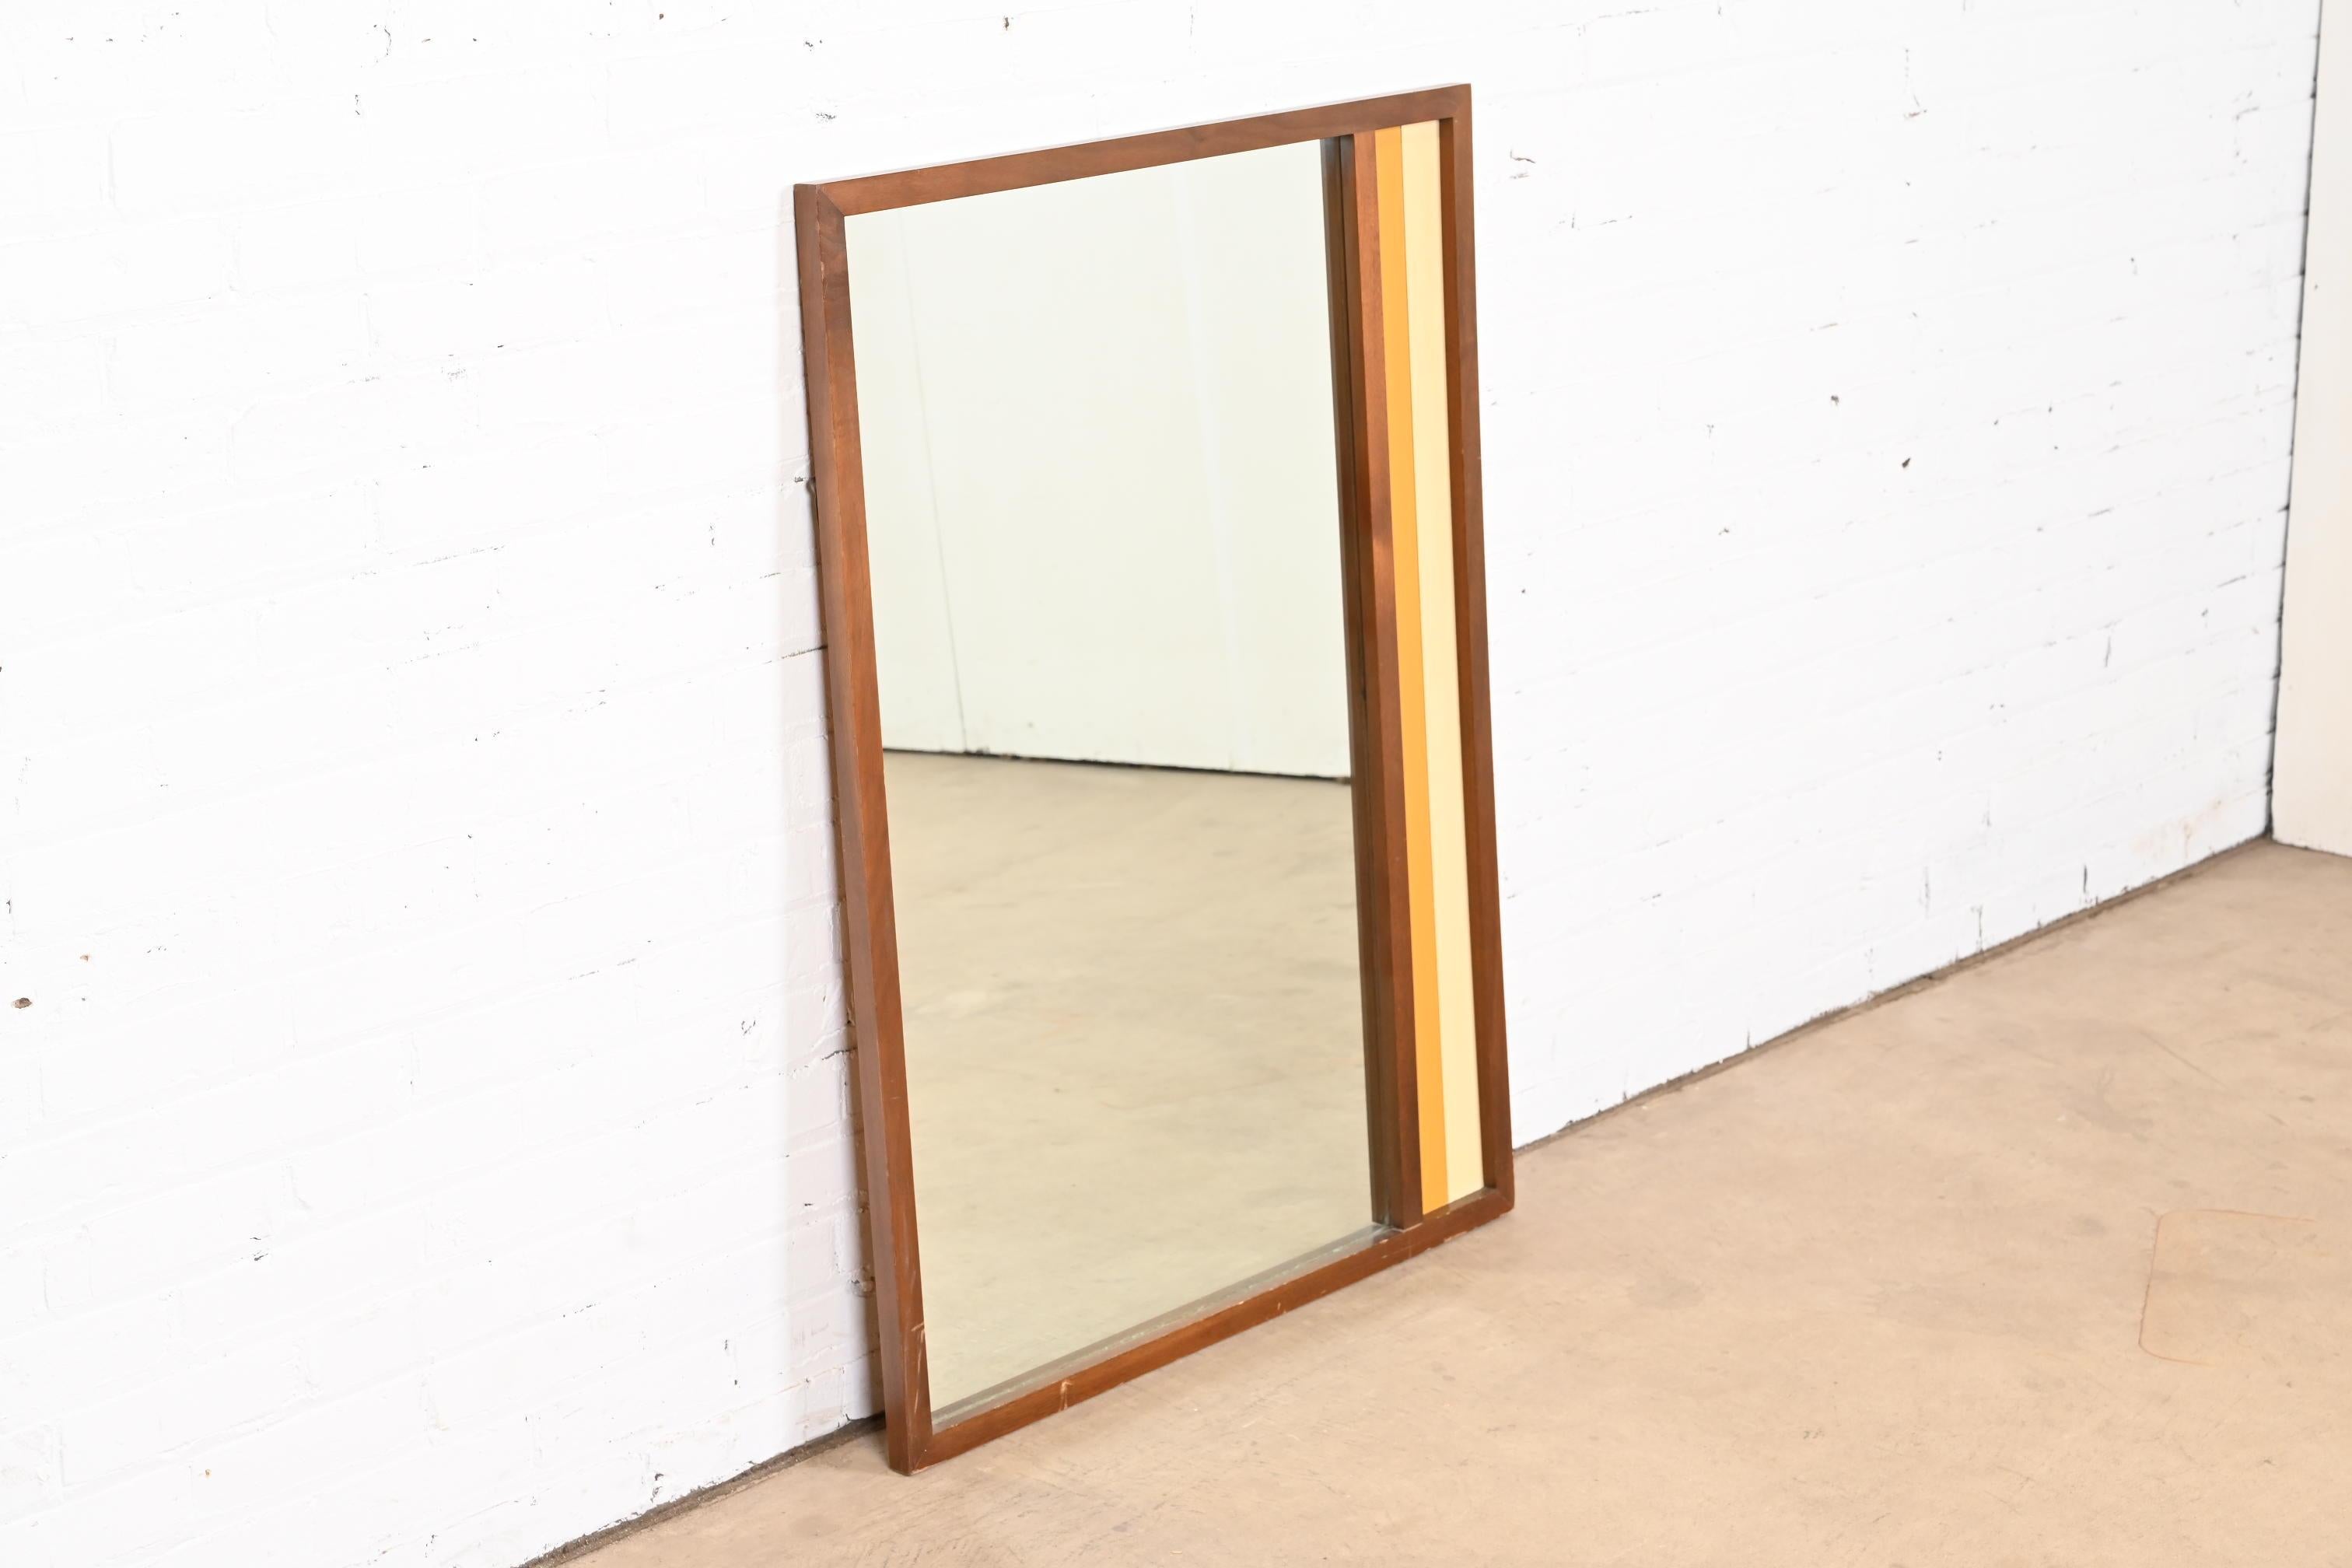 20th Century Arne Vodder Style Mid-Century Modern Walnut Framed Mirror